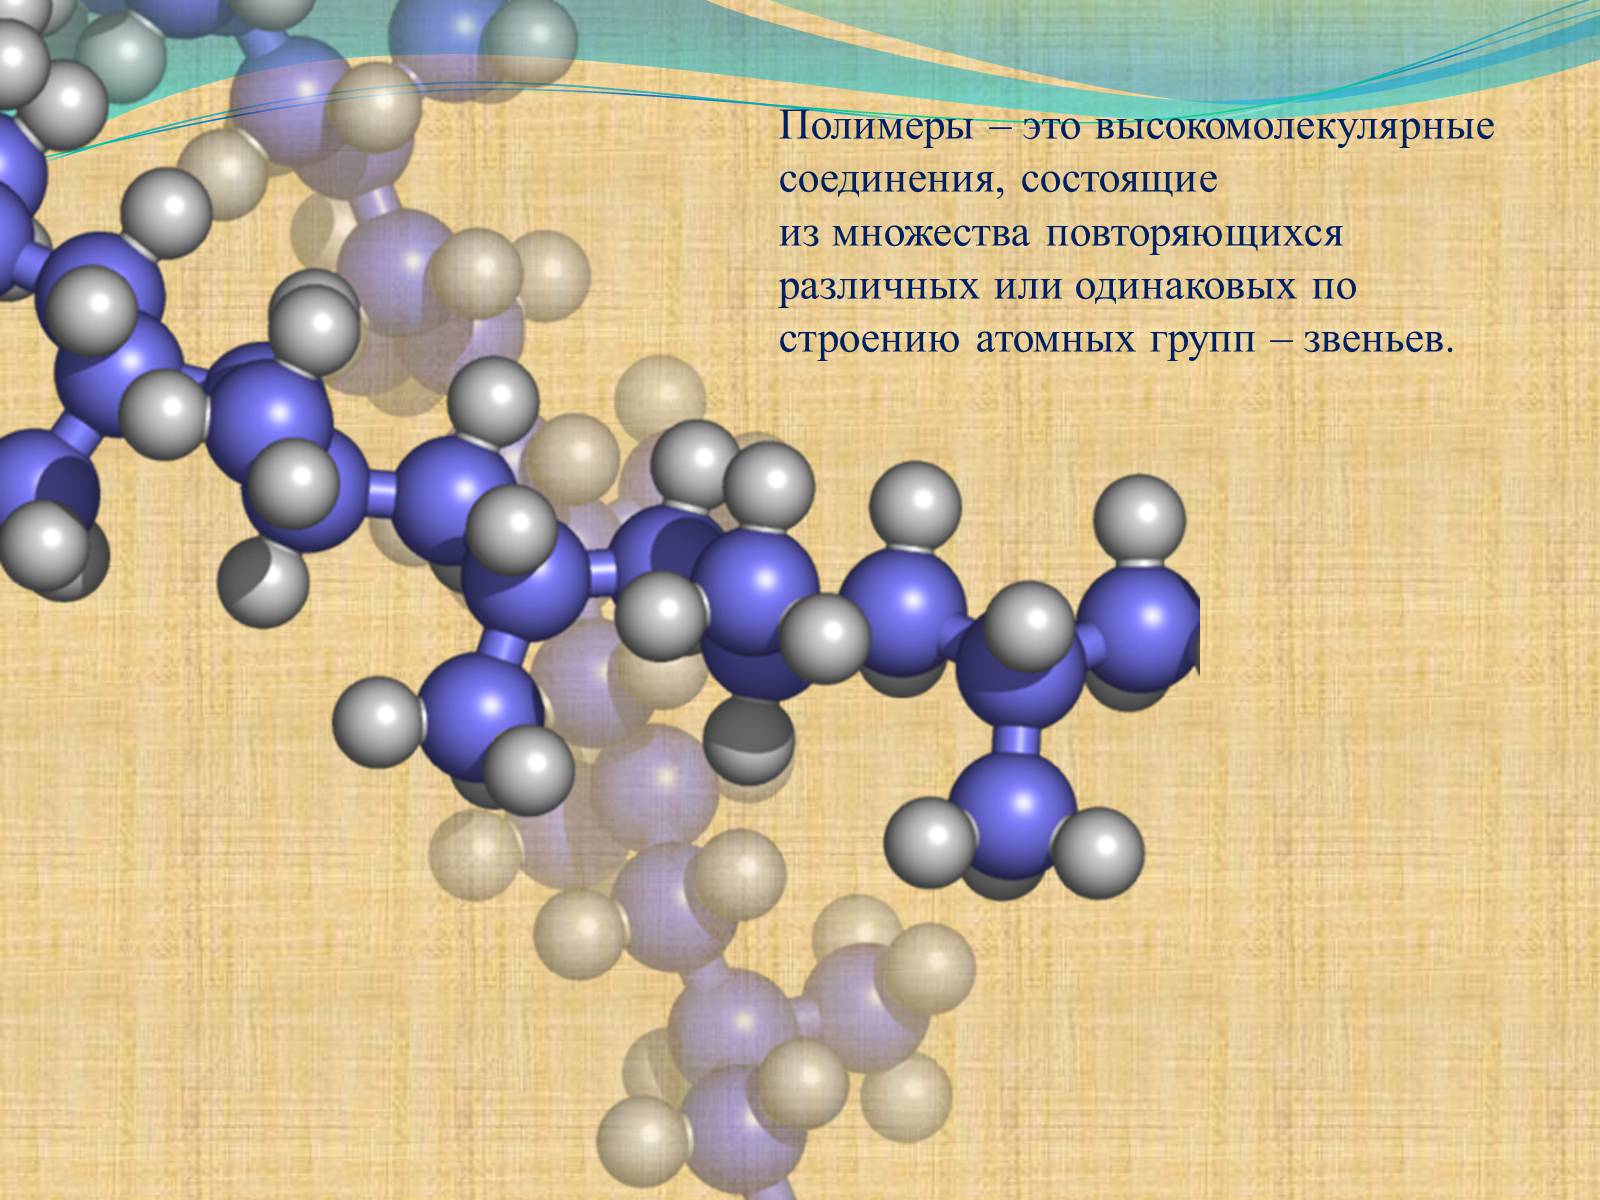 Синтетические высокомолекулярные соединения. Соединения полимеров. Высокомолекулярные полимеры. Полимеры это высокомолекулярные вещества. Природные полимеры.